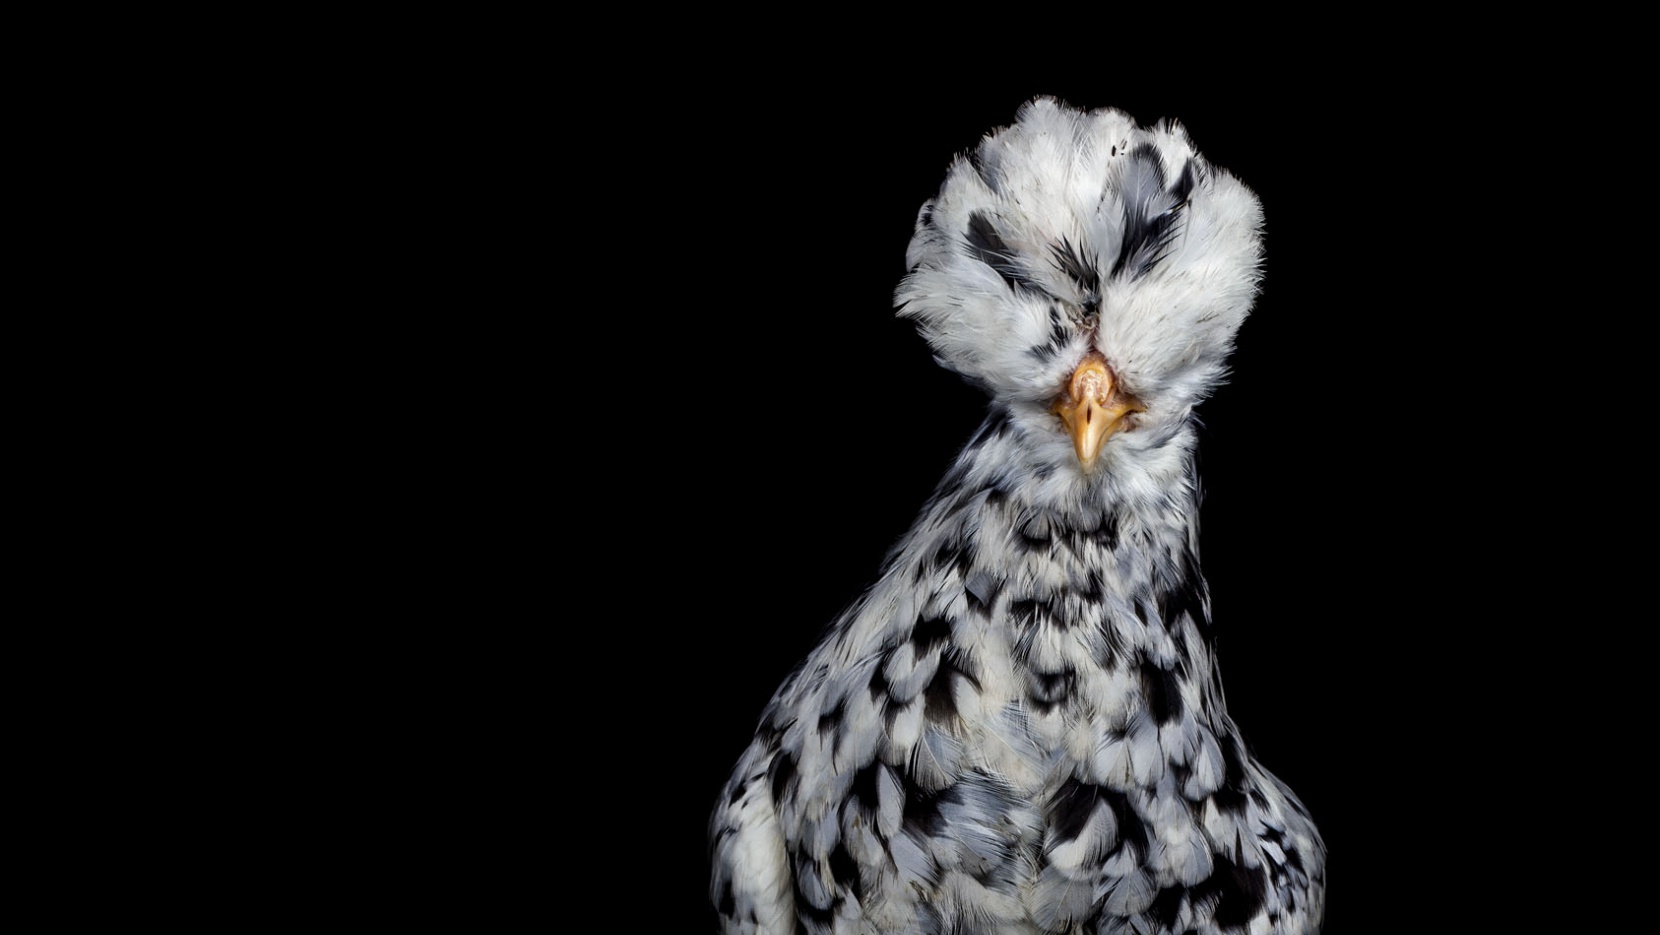 The Astonishing 'Animalia' Photo Series By Ernest Goh | Yatzer